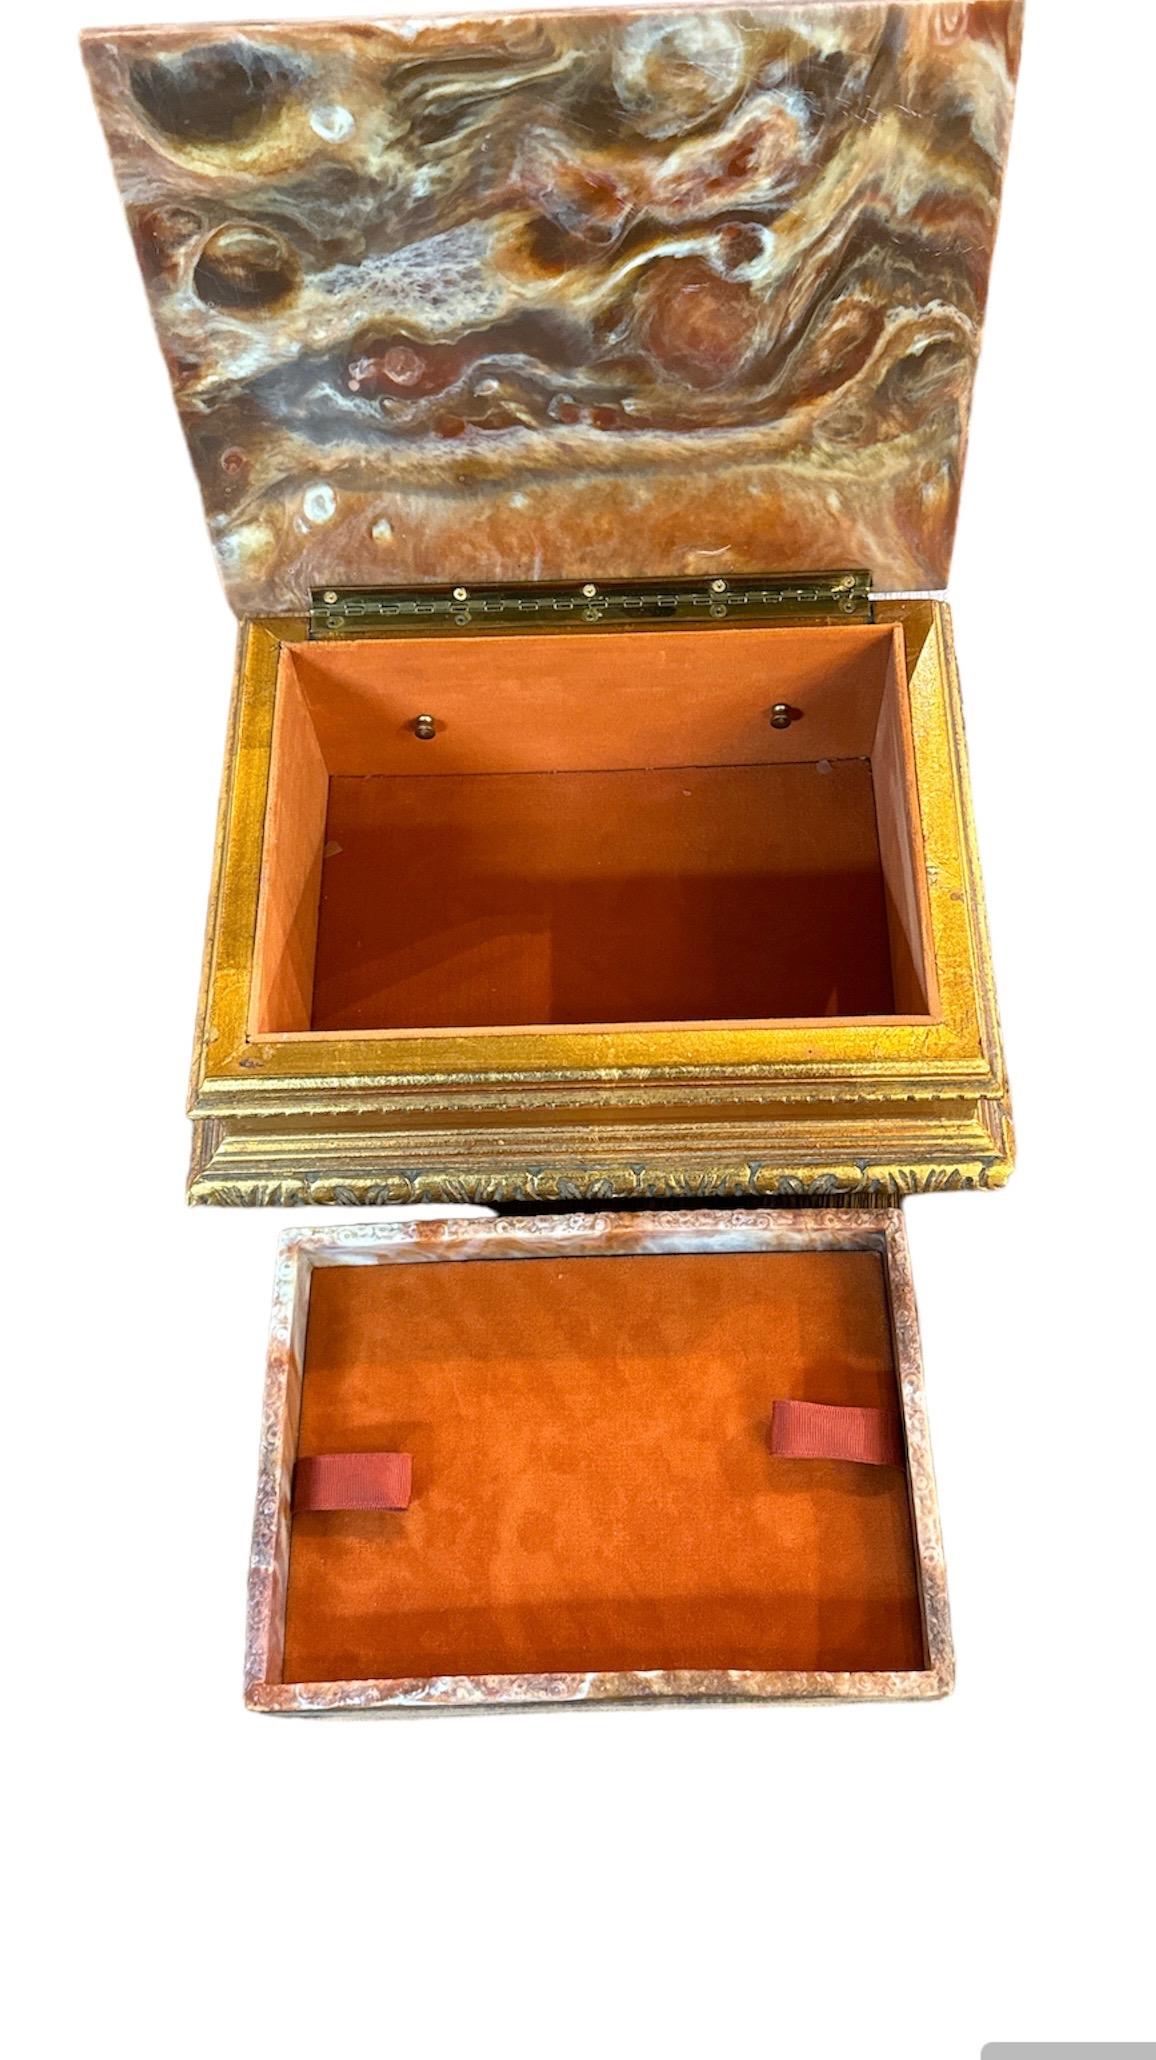 Vintage Incolay Stone Italian Jewelry Box - Womderful Design Holzkiste mit einer großen Mischung aus Farbe und Stil. Auf der Vorderseite sind vier Personen abgebildet, die auf einem Baumstamm oder einem Boot zu stehen scheinen. Alle sind in die